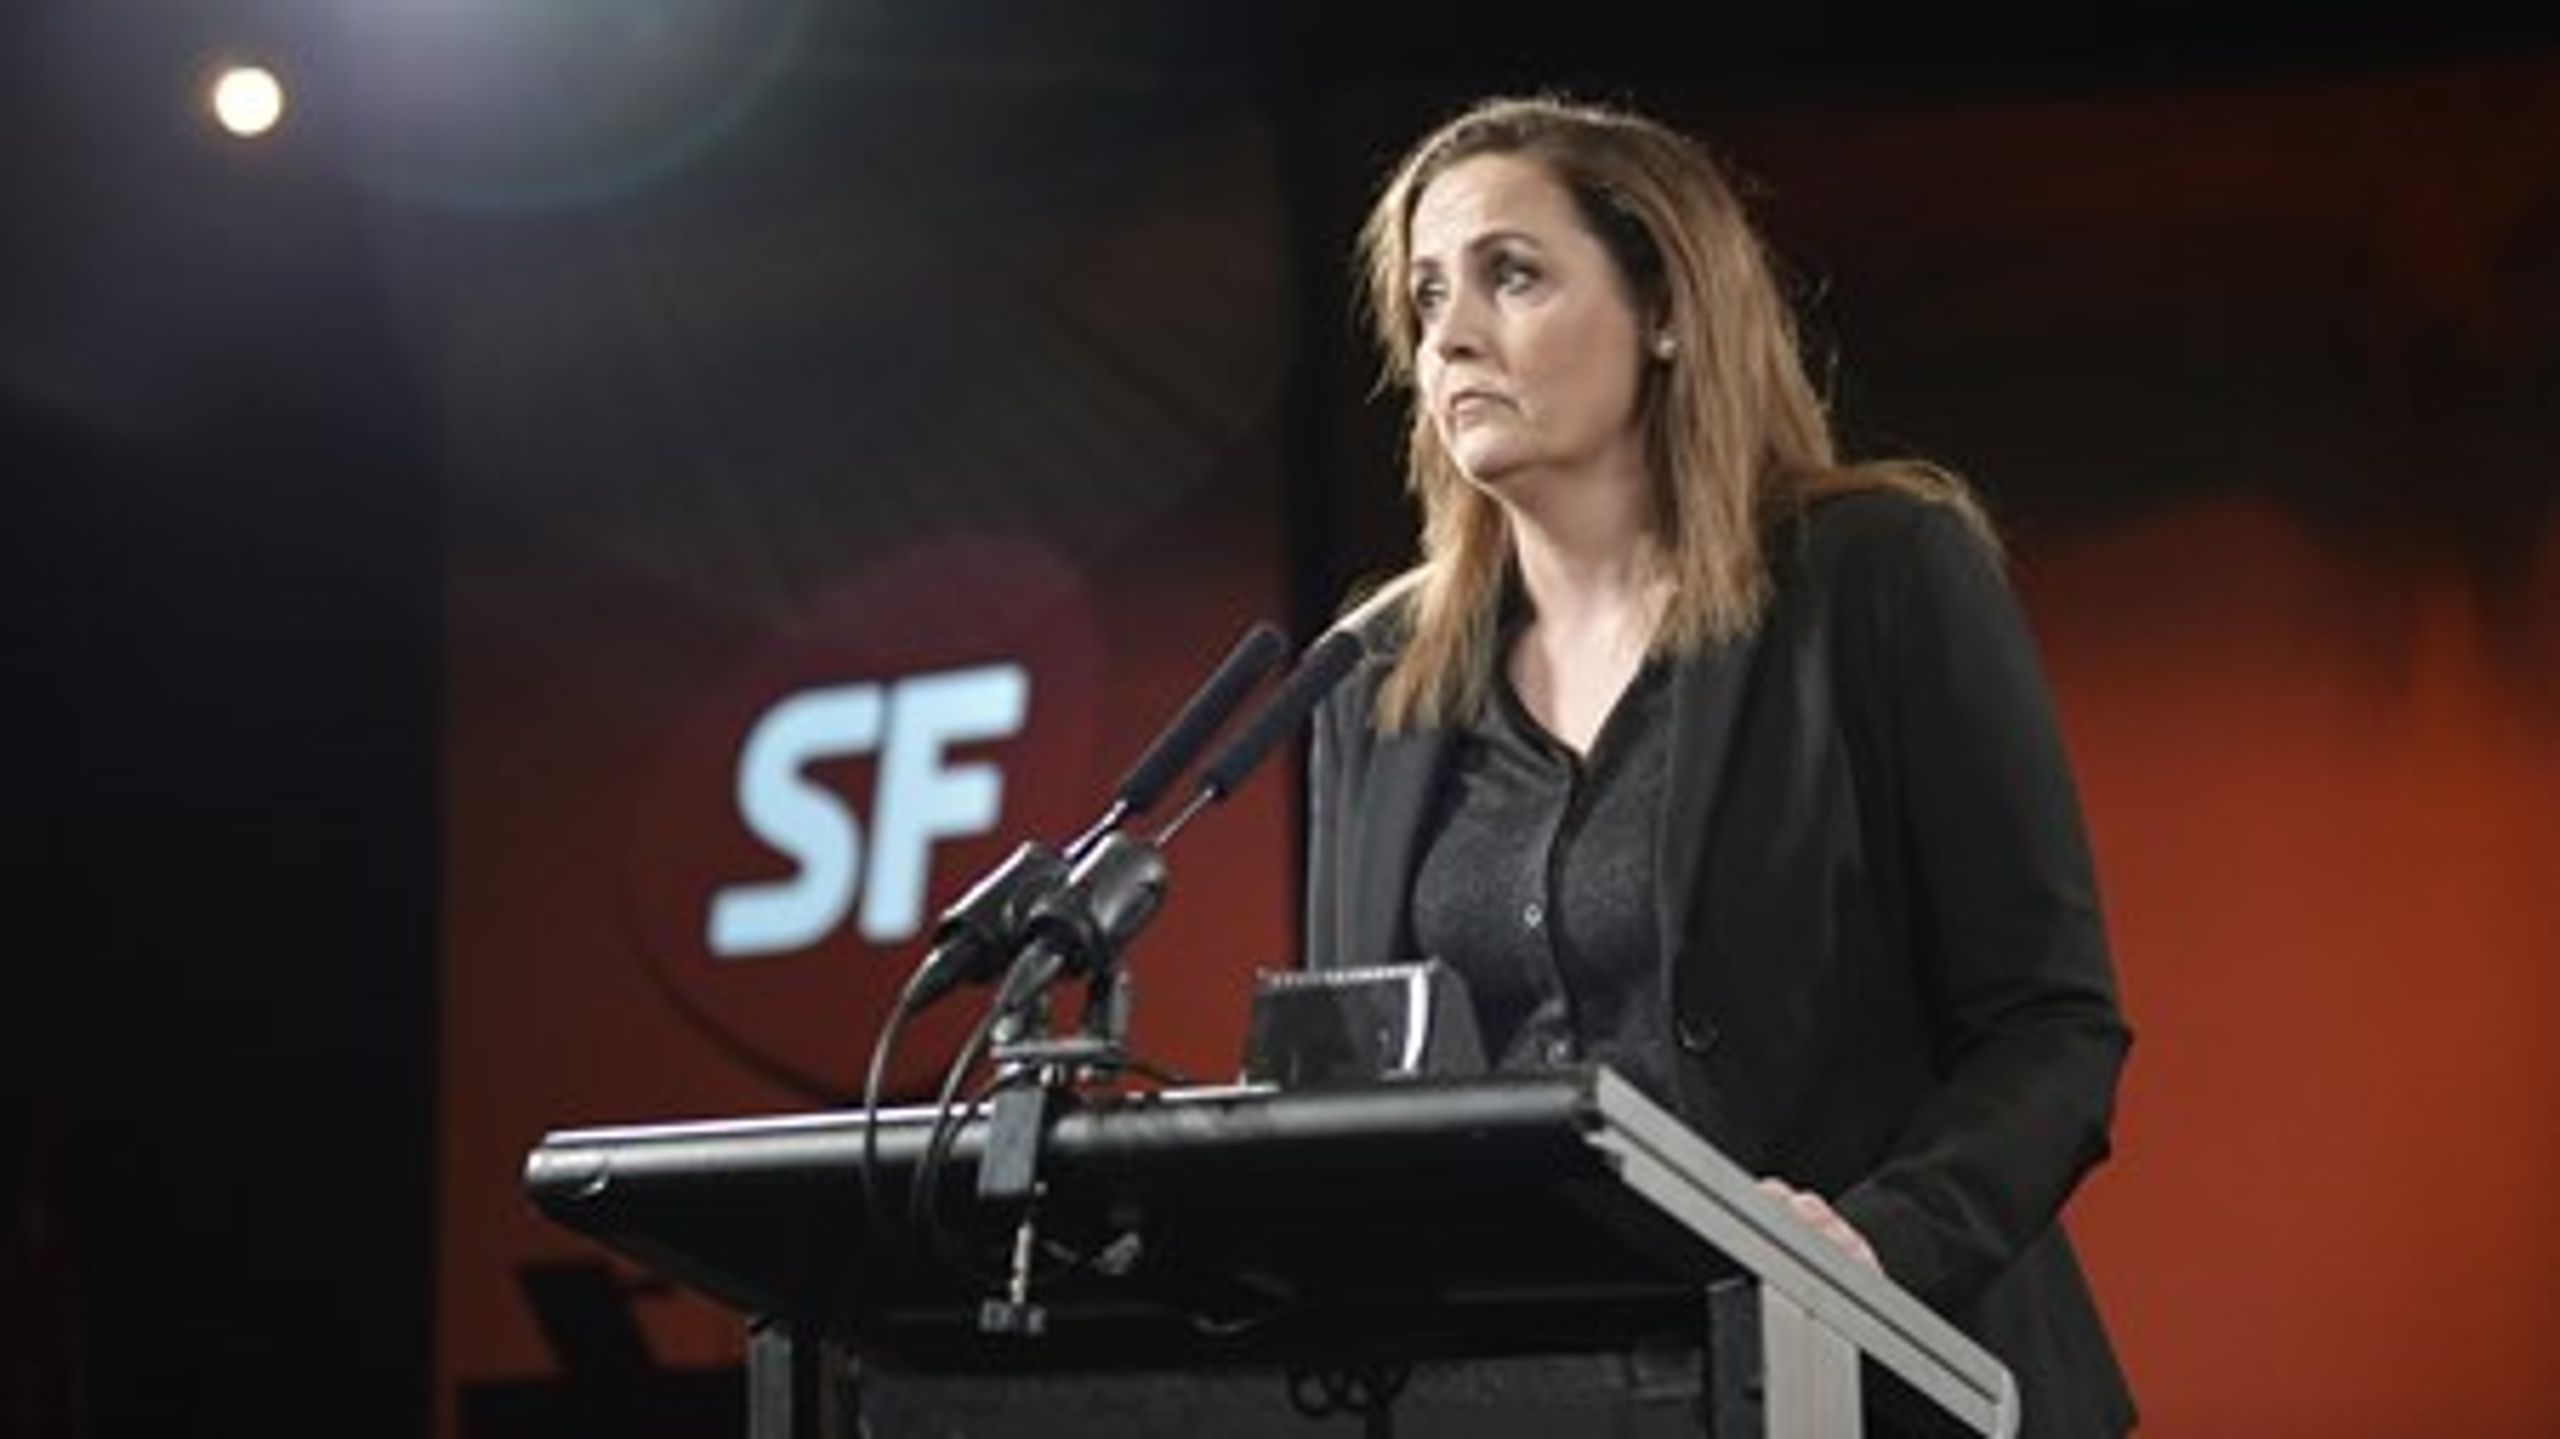 Formand Pia Olsen Dyhr har netop talt ved SF's landsmøde 2015.